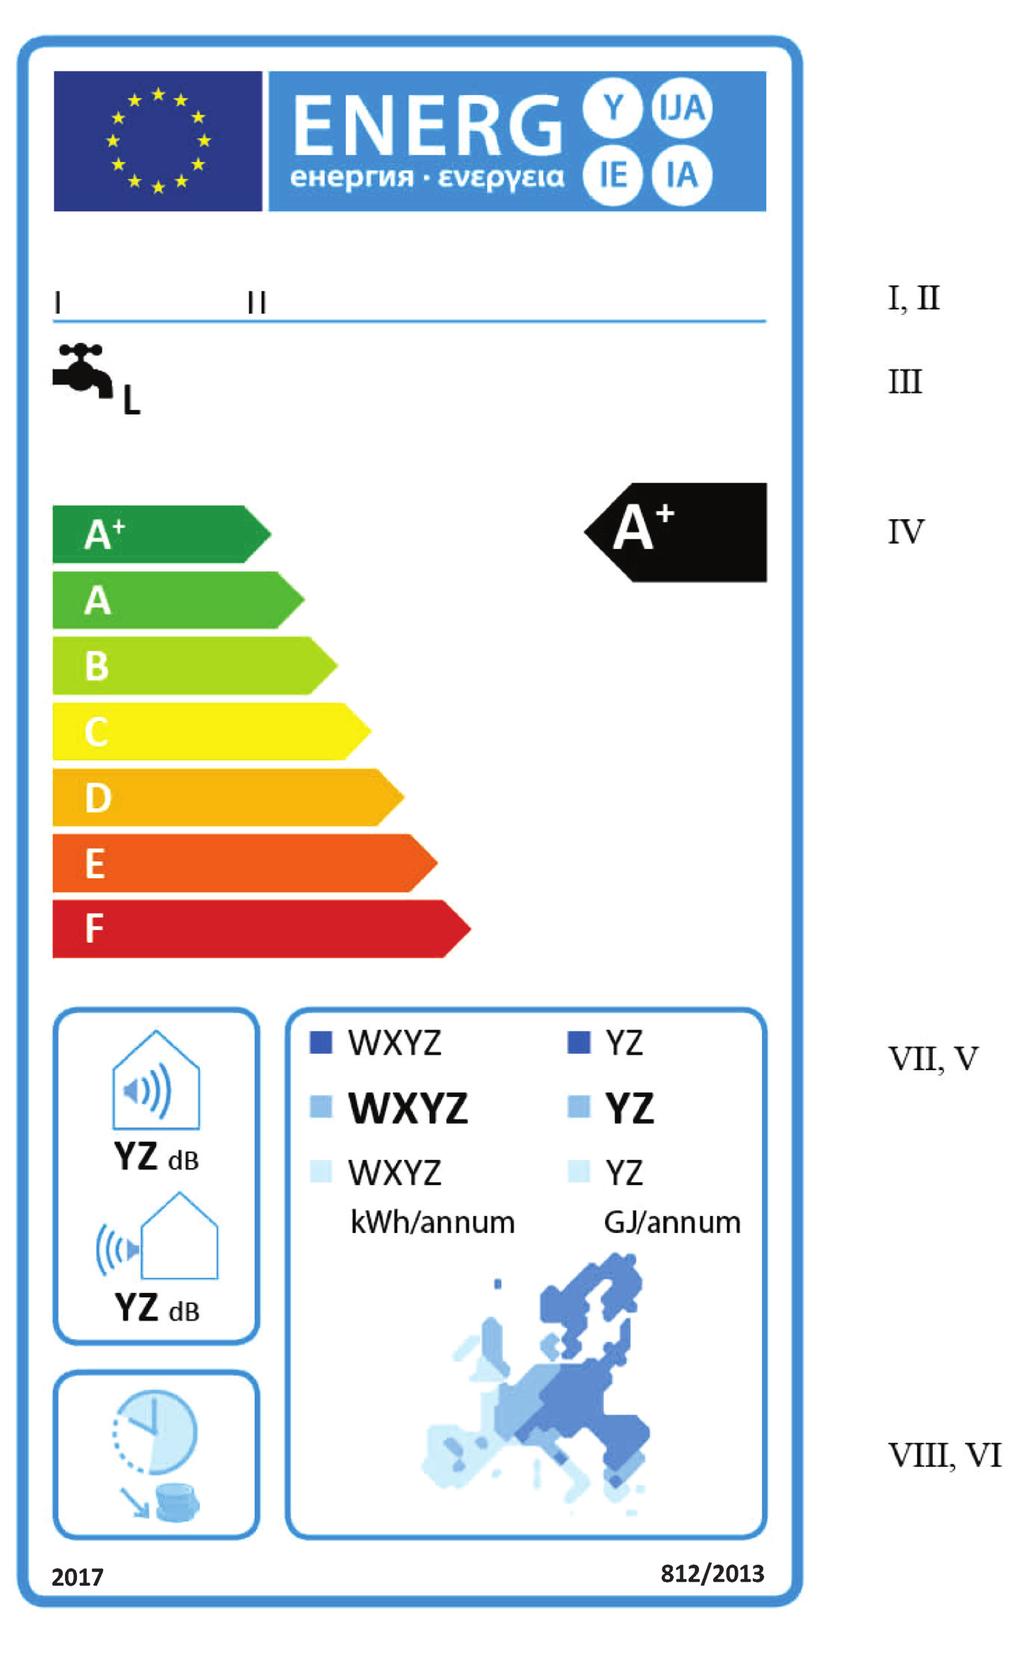 L 239/100 RO Jurnalul Oficial al Uniunii Europene 1.2.3. Instalații cu pompă de căldură pentru încălzirea apei din clasele de eficiență energetică aferentă încălzirii apei A+-F (a) Eticheta trebuie să conțină informațiile enumerate la punctul 1.